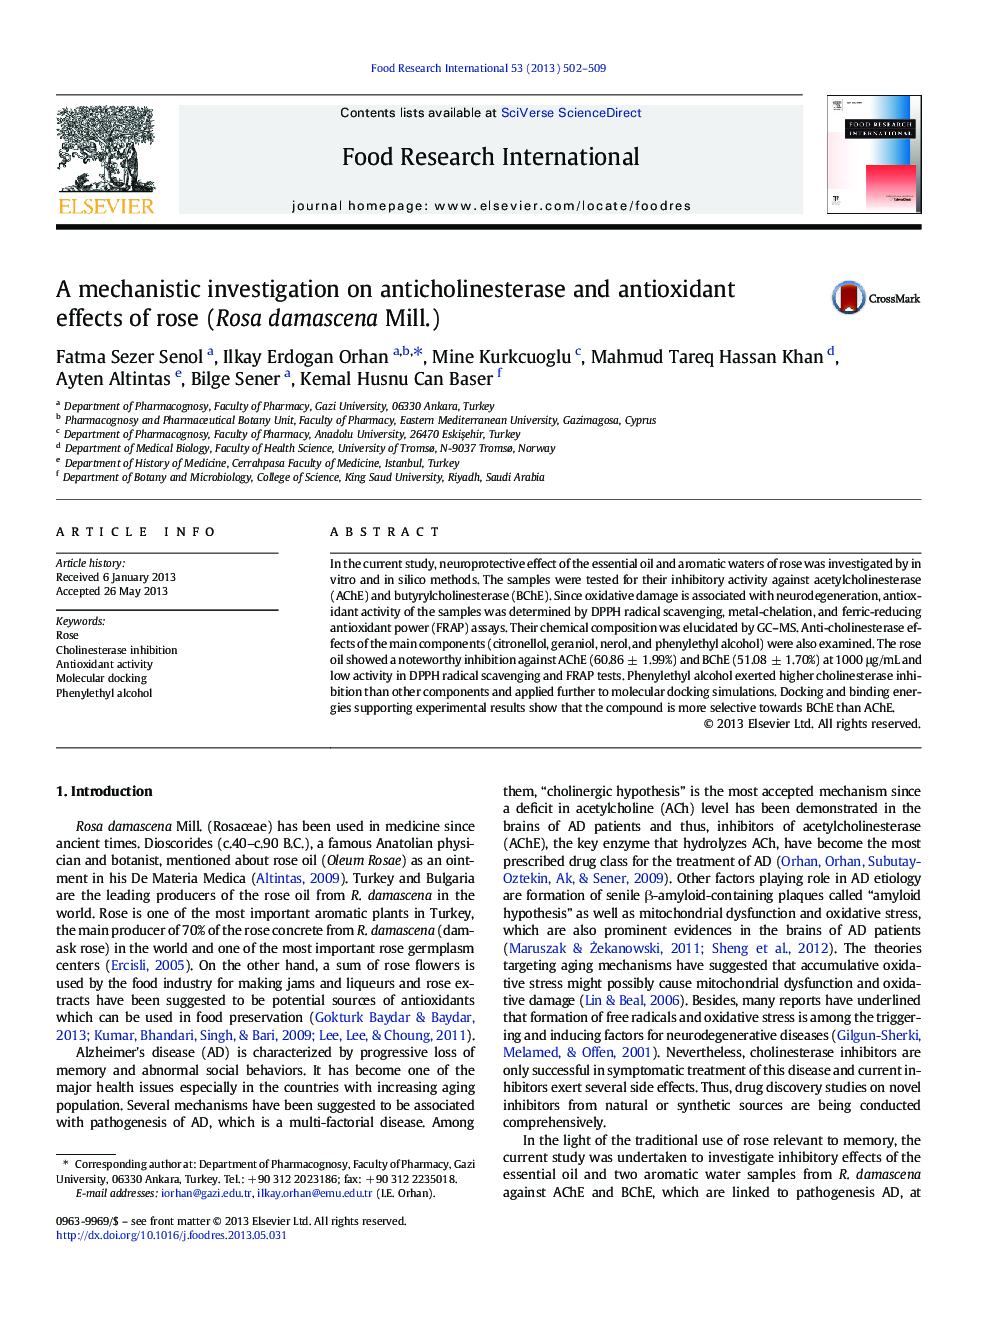 بررسی مکانیسمی بر اثرات آنتی کولین استراز و آنتی اکسیدانی گل رز (گل رزا داسکنا) 